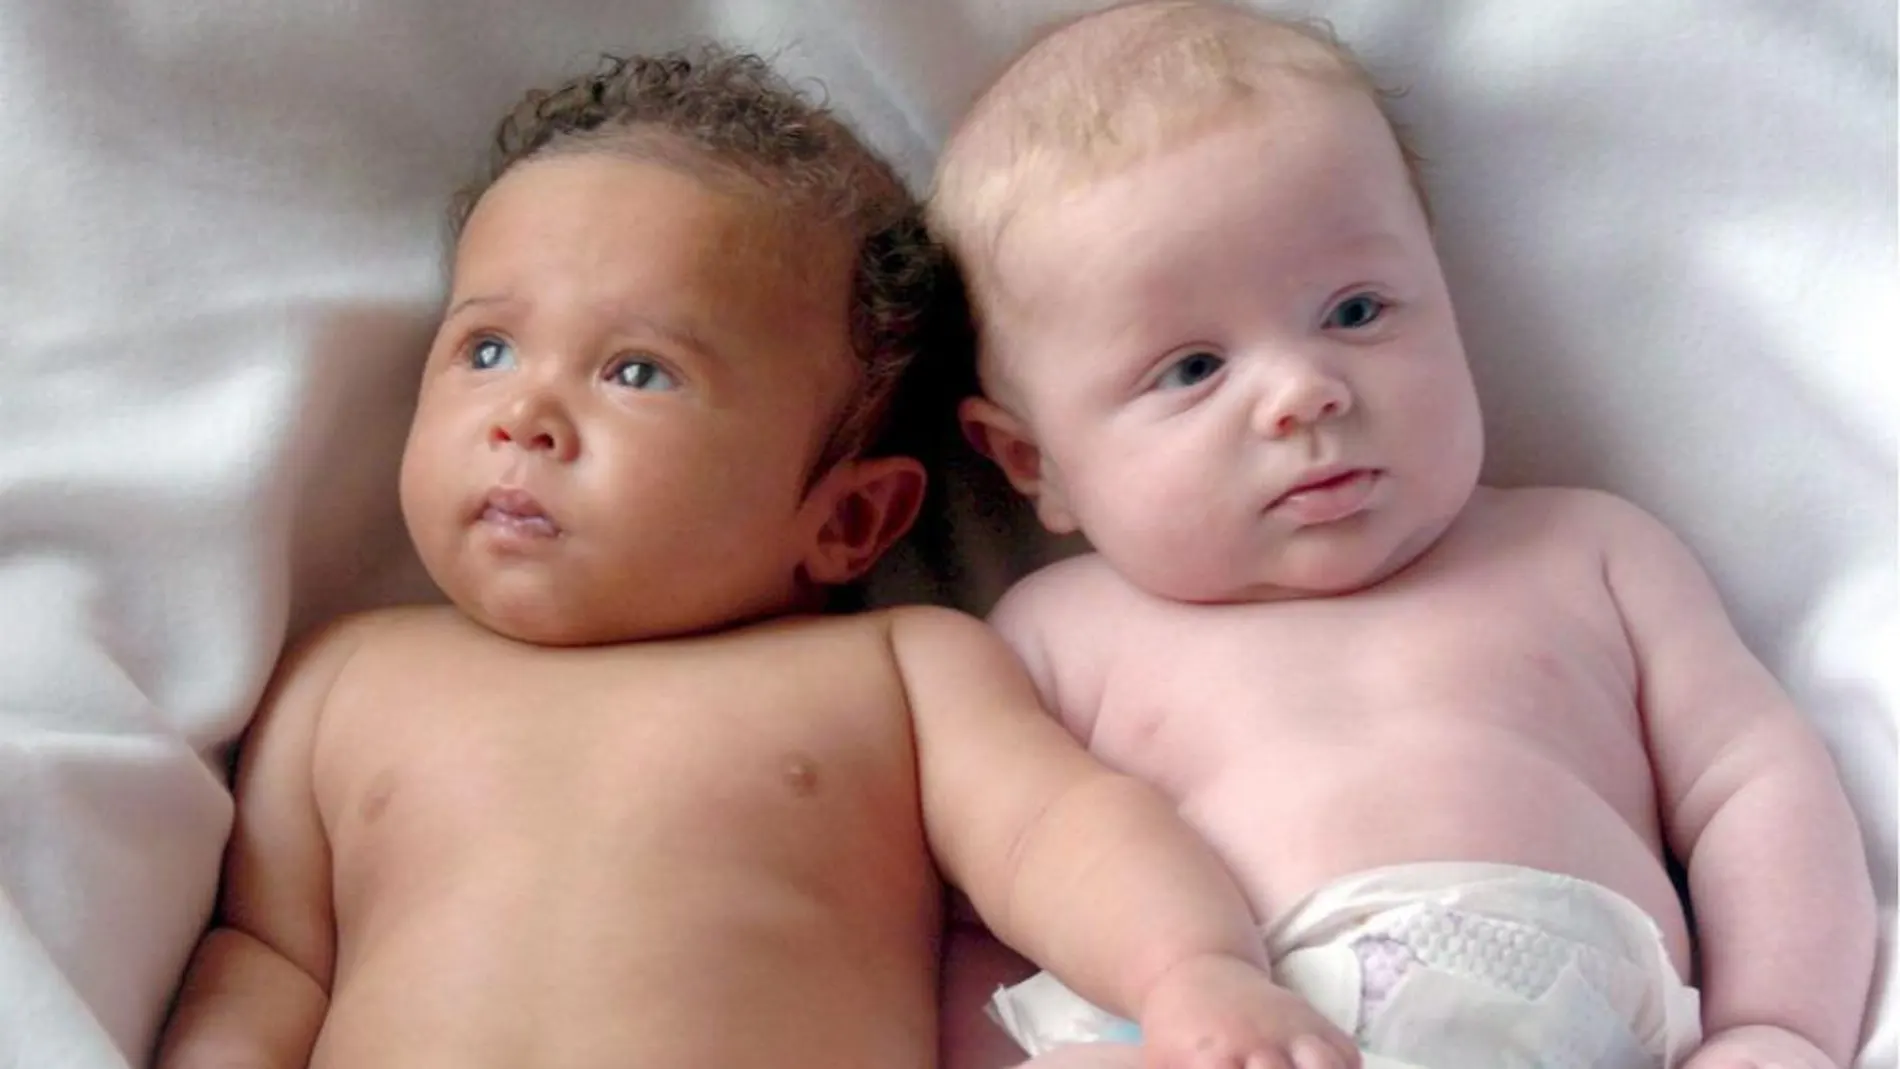 Imagen de otra excepción de la naturaleza. Dos hermanos mellizos, en este caso, de diferente color, nacieron en Reino Unido en 2006.